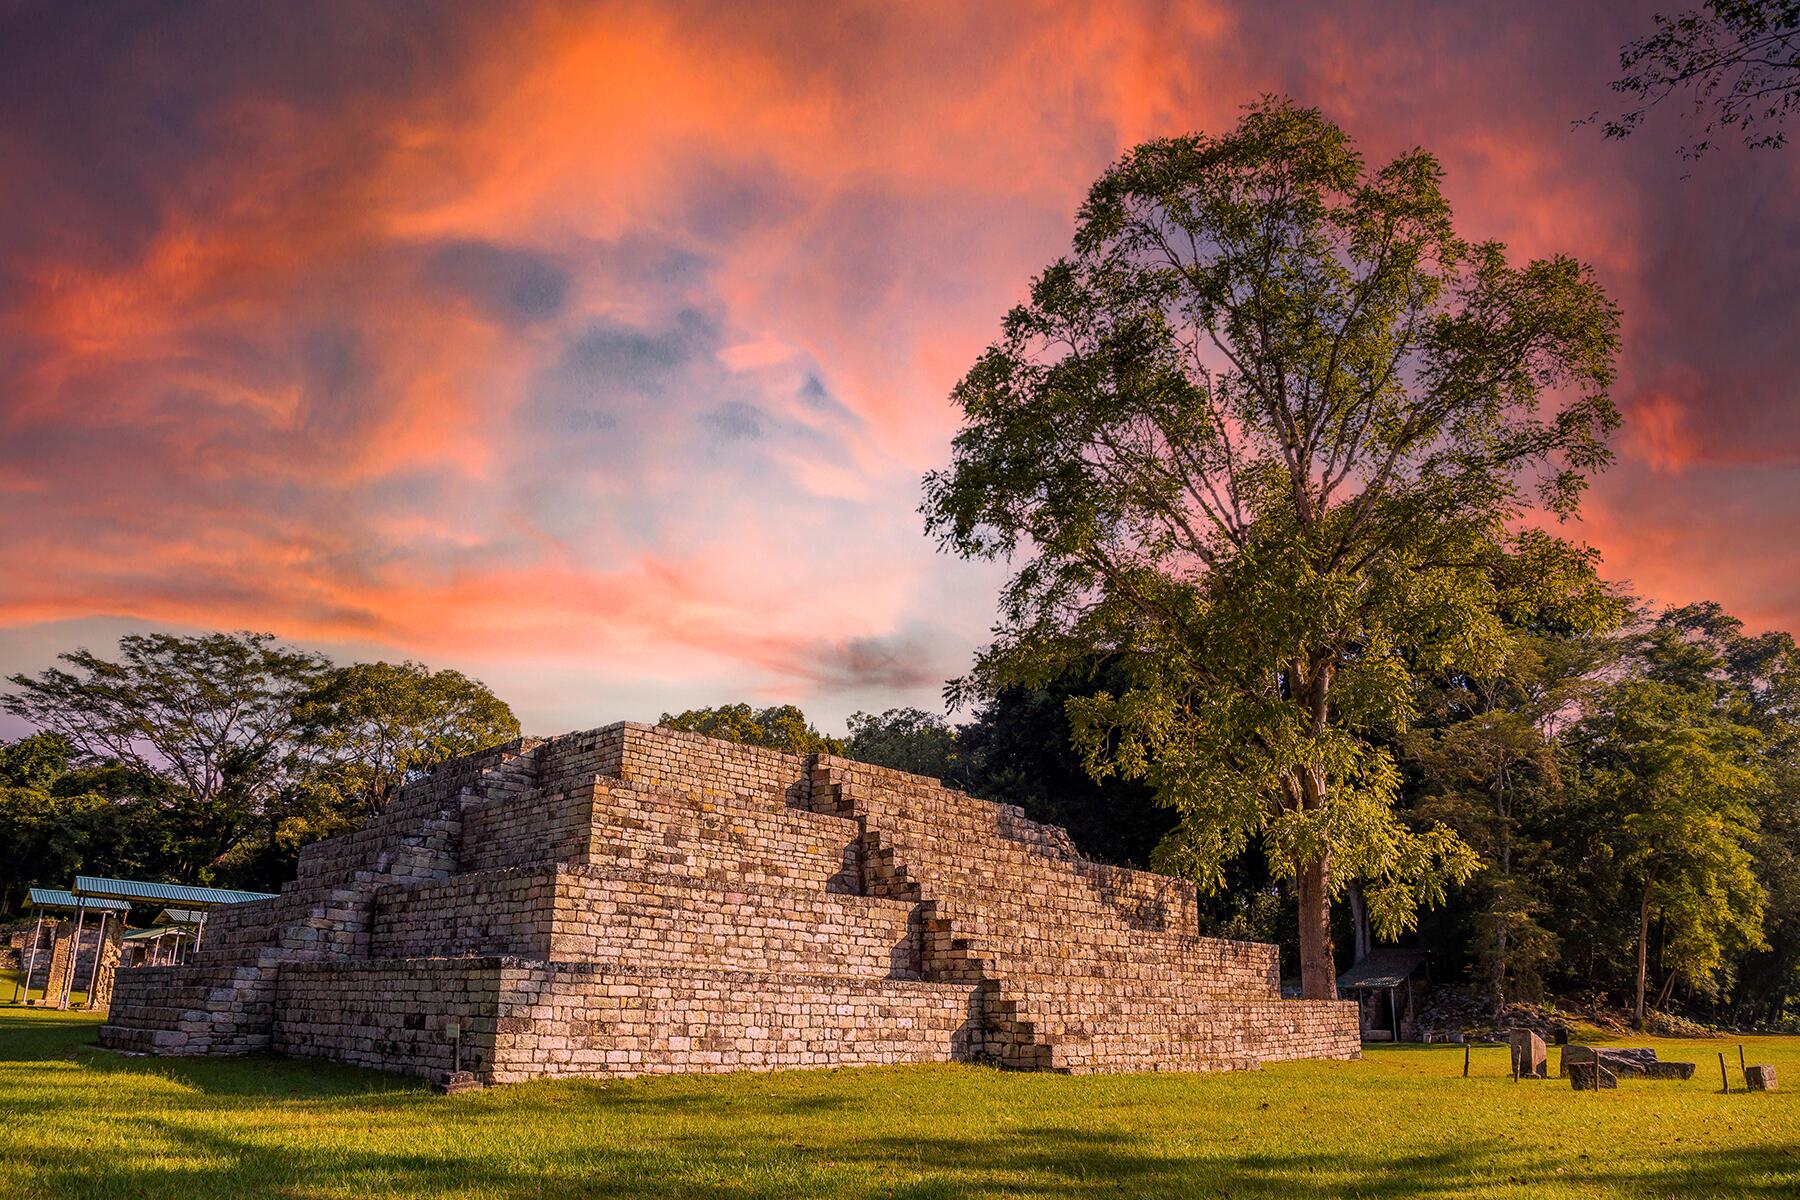 El medio turístico FODOR’S menciona por qué debes viajar a Honduras